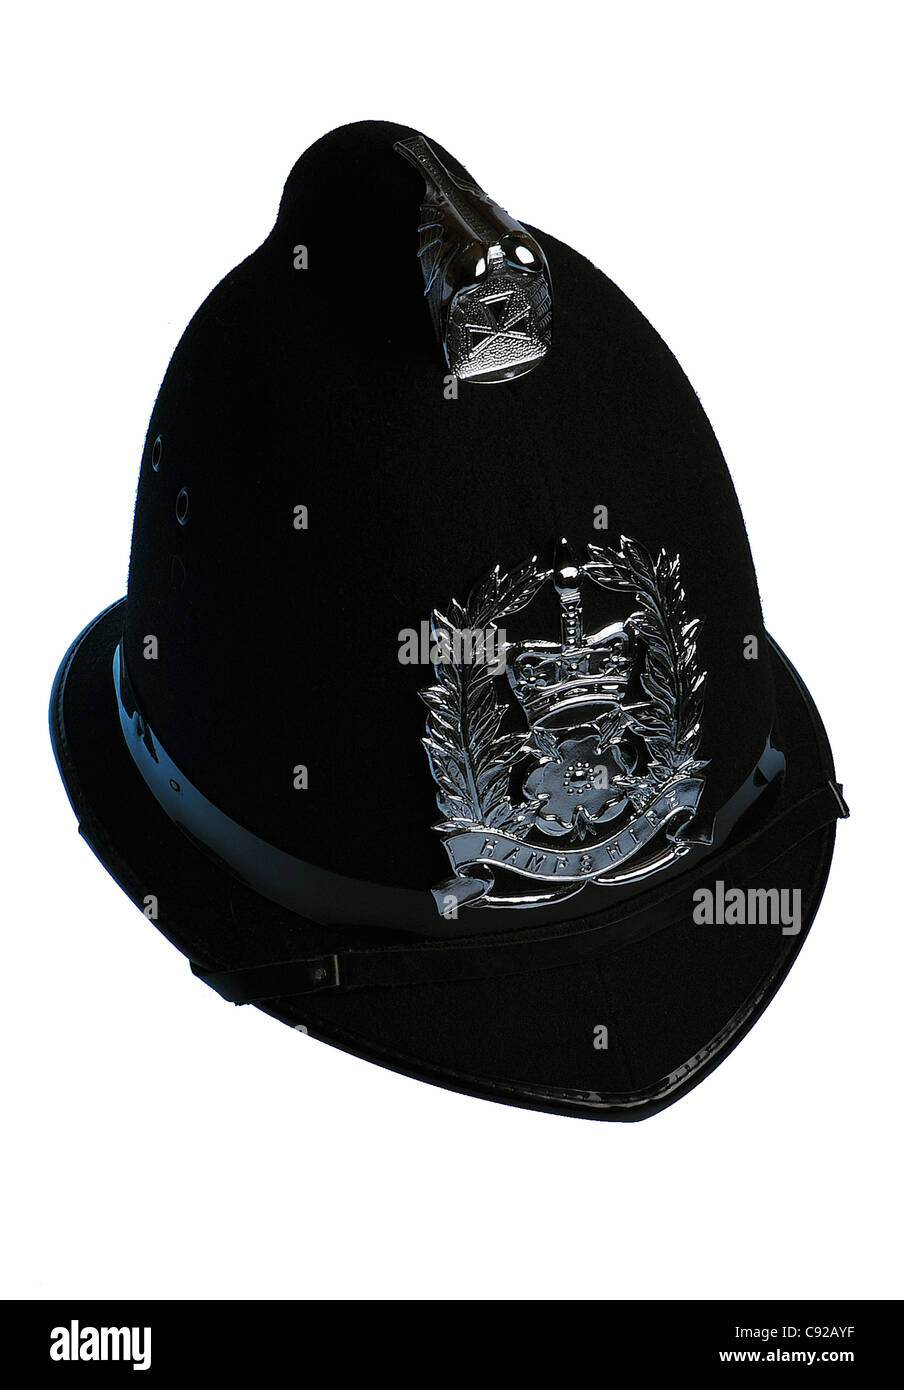 A Hampshire funzionario di polizia del casco con insegne. Foto Stock